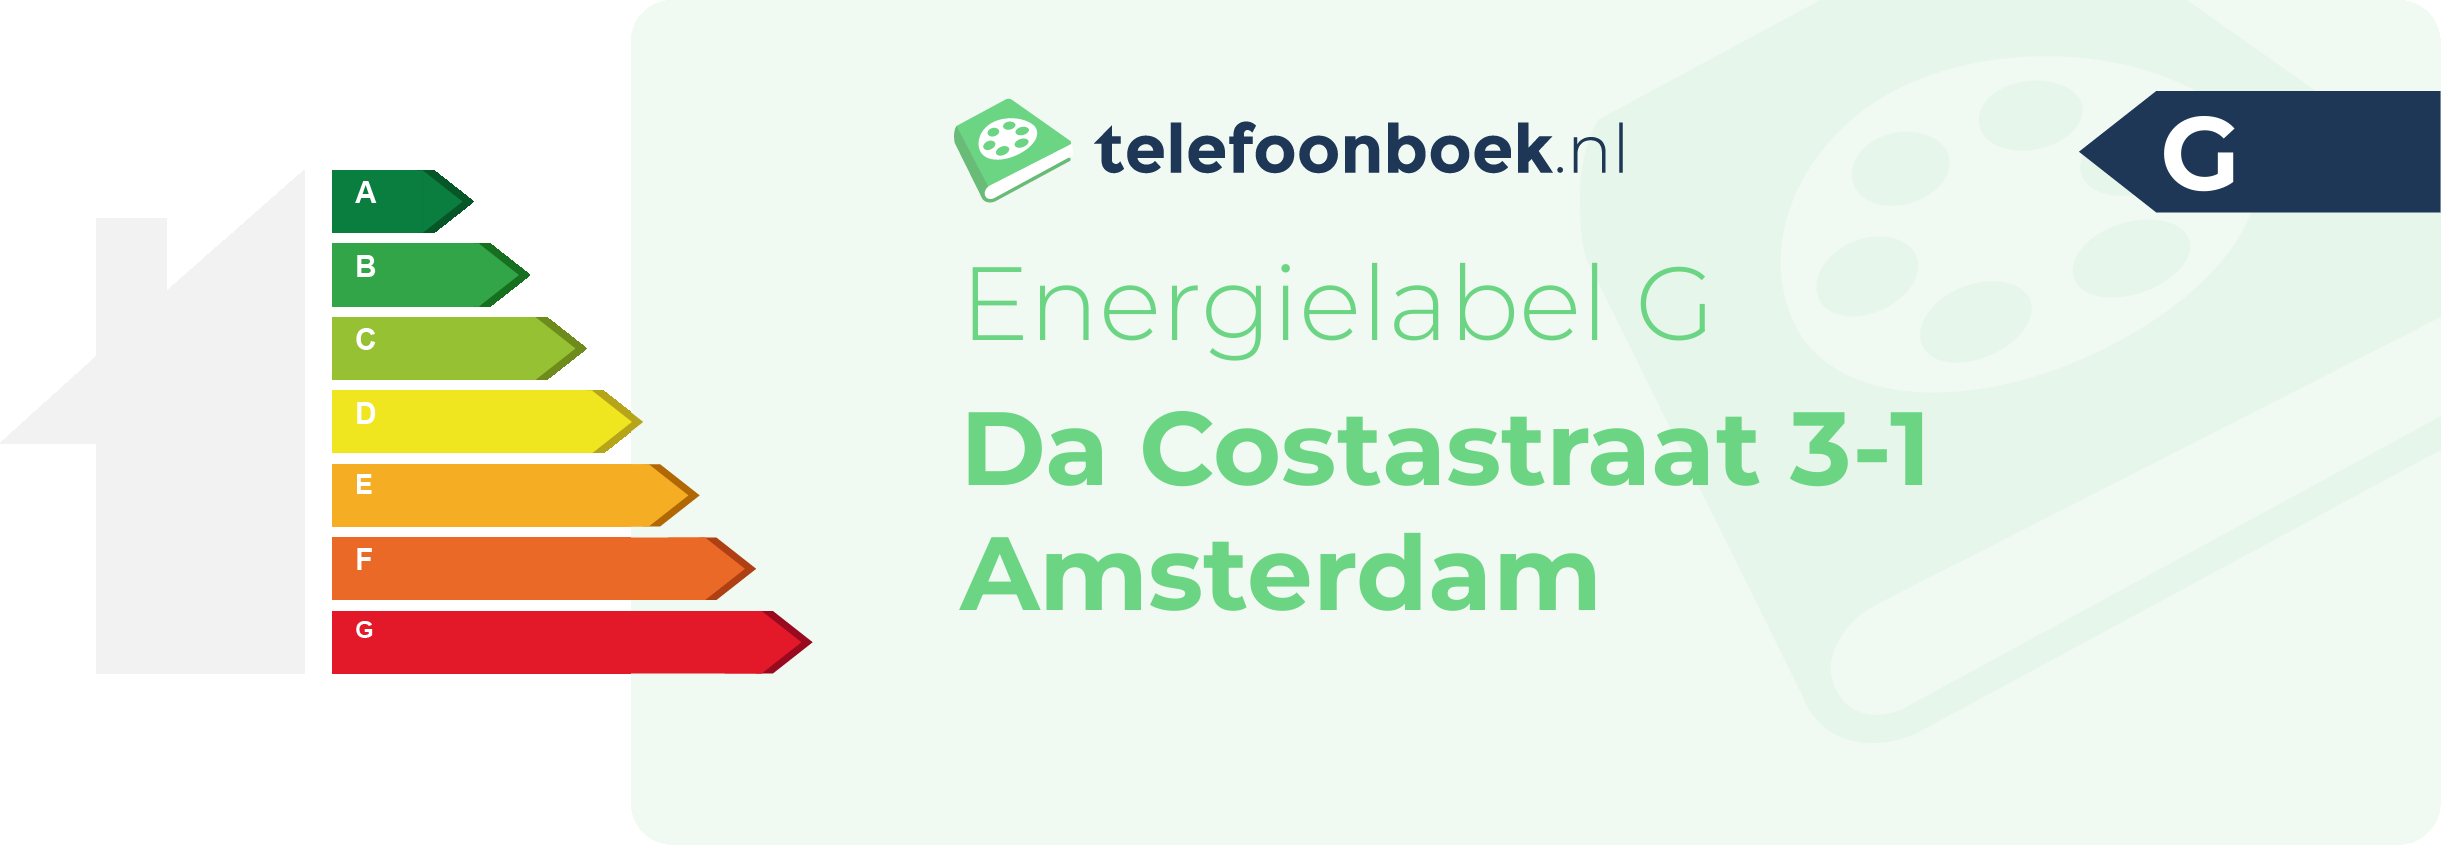 Energielabel Da Costastraat 3-1 Amsterdam